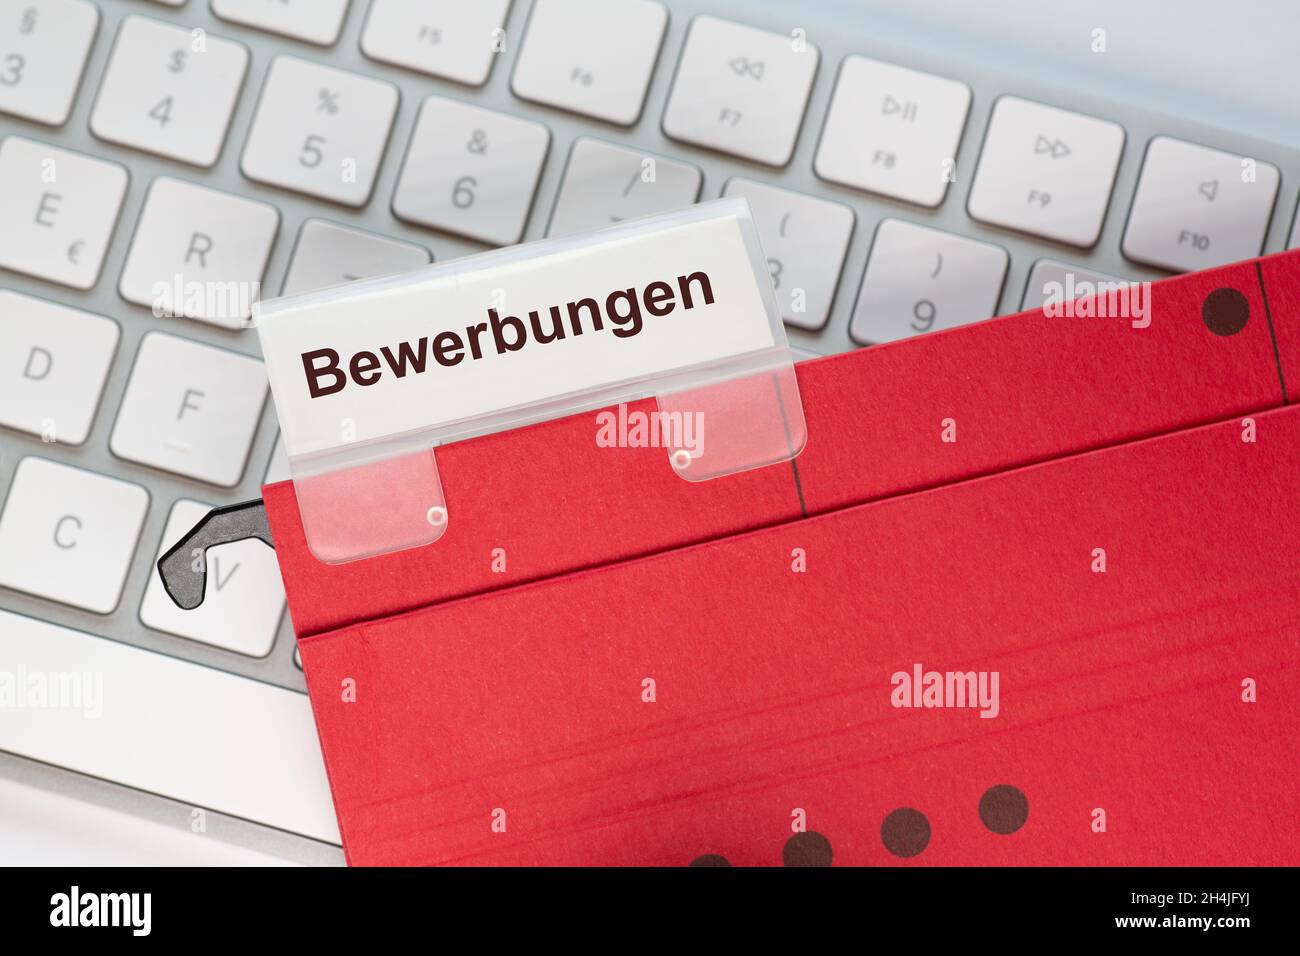 La palabra alemana para las aplicaciones se puede ver en la etiqueta de una carpeta colgante roja. La carpeta para colgar se encuentra en el teclado de un equipo. Foto de stock